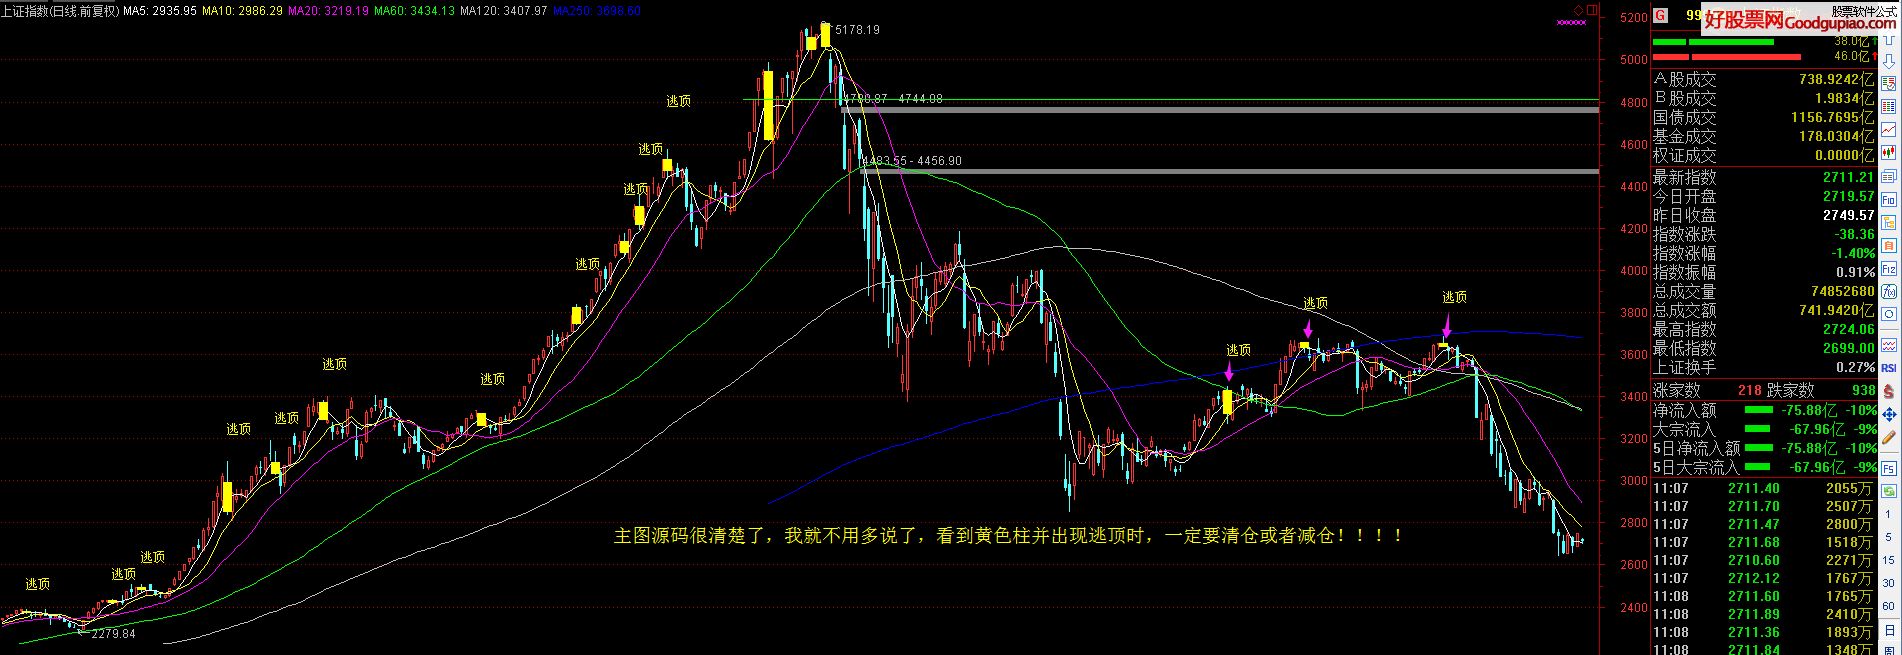 中国西电股票